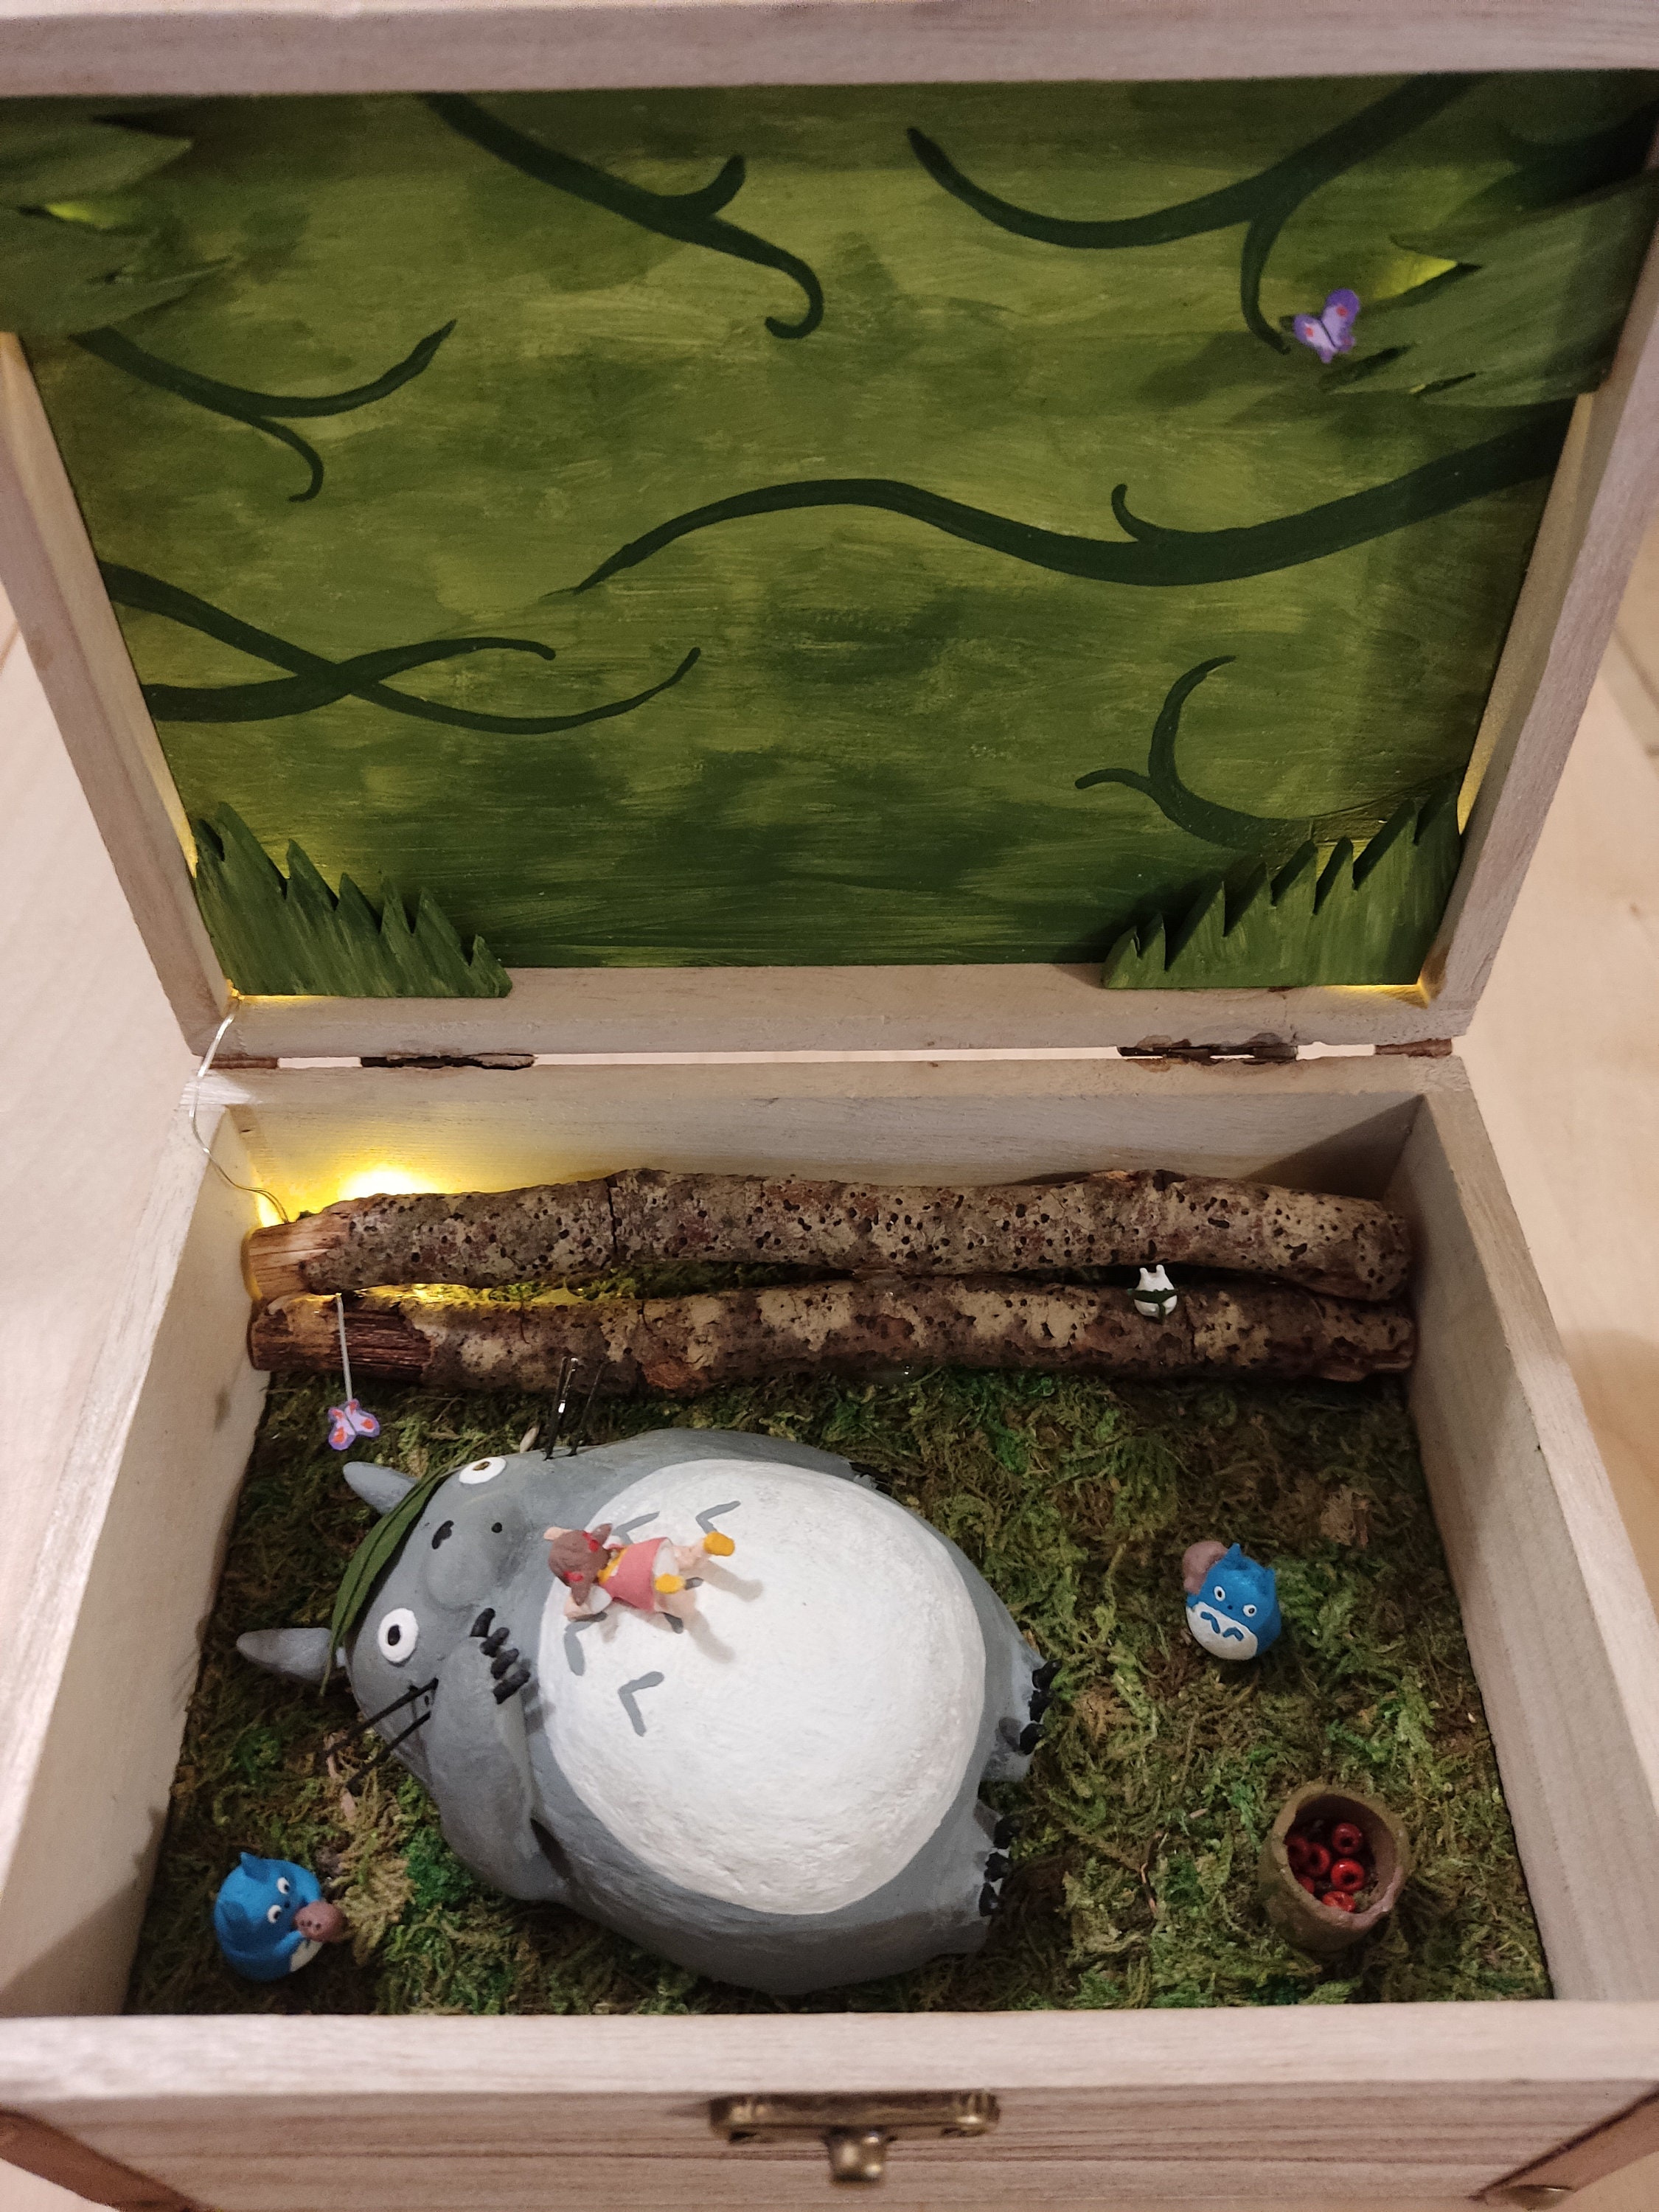 Miniatuart Diorama  Le monde de Totoro – Bento&co